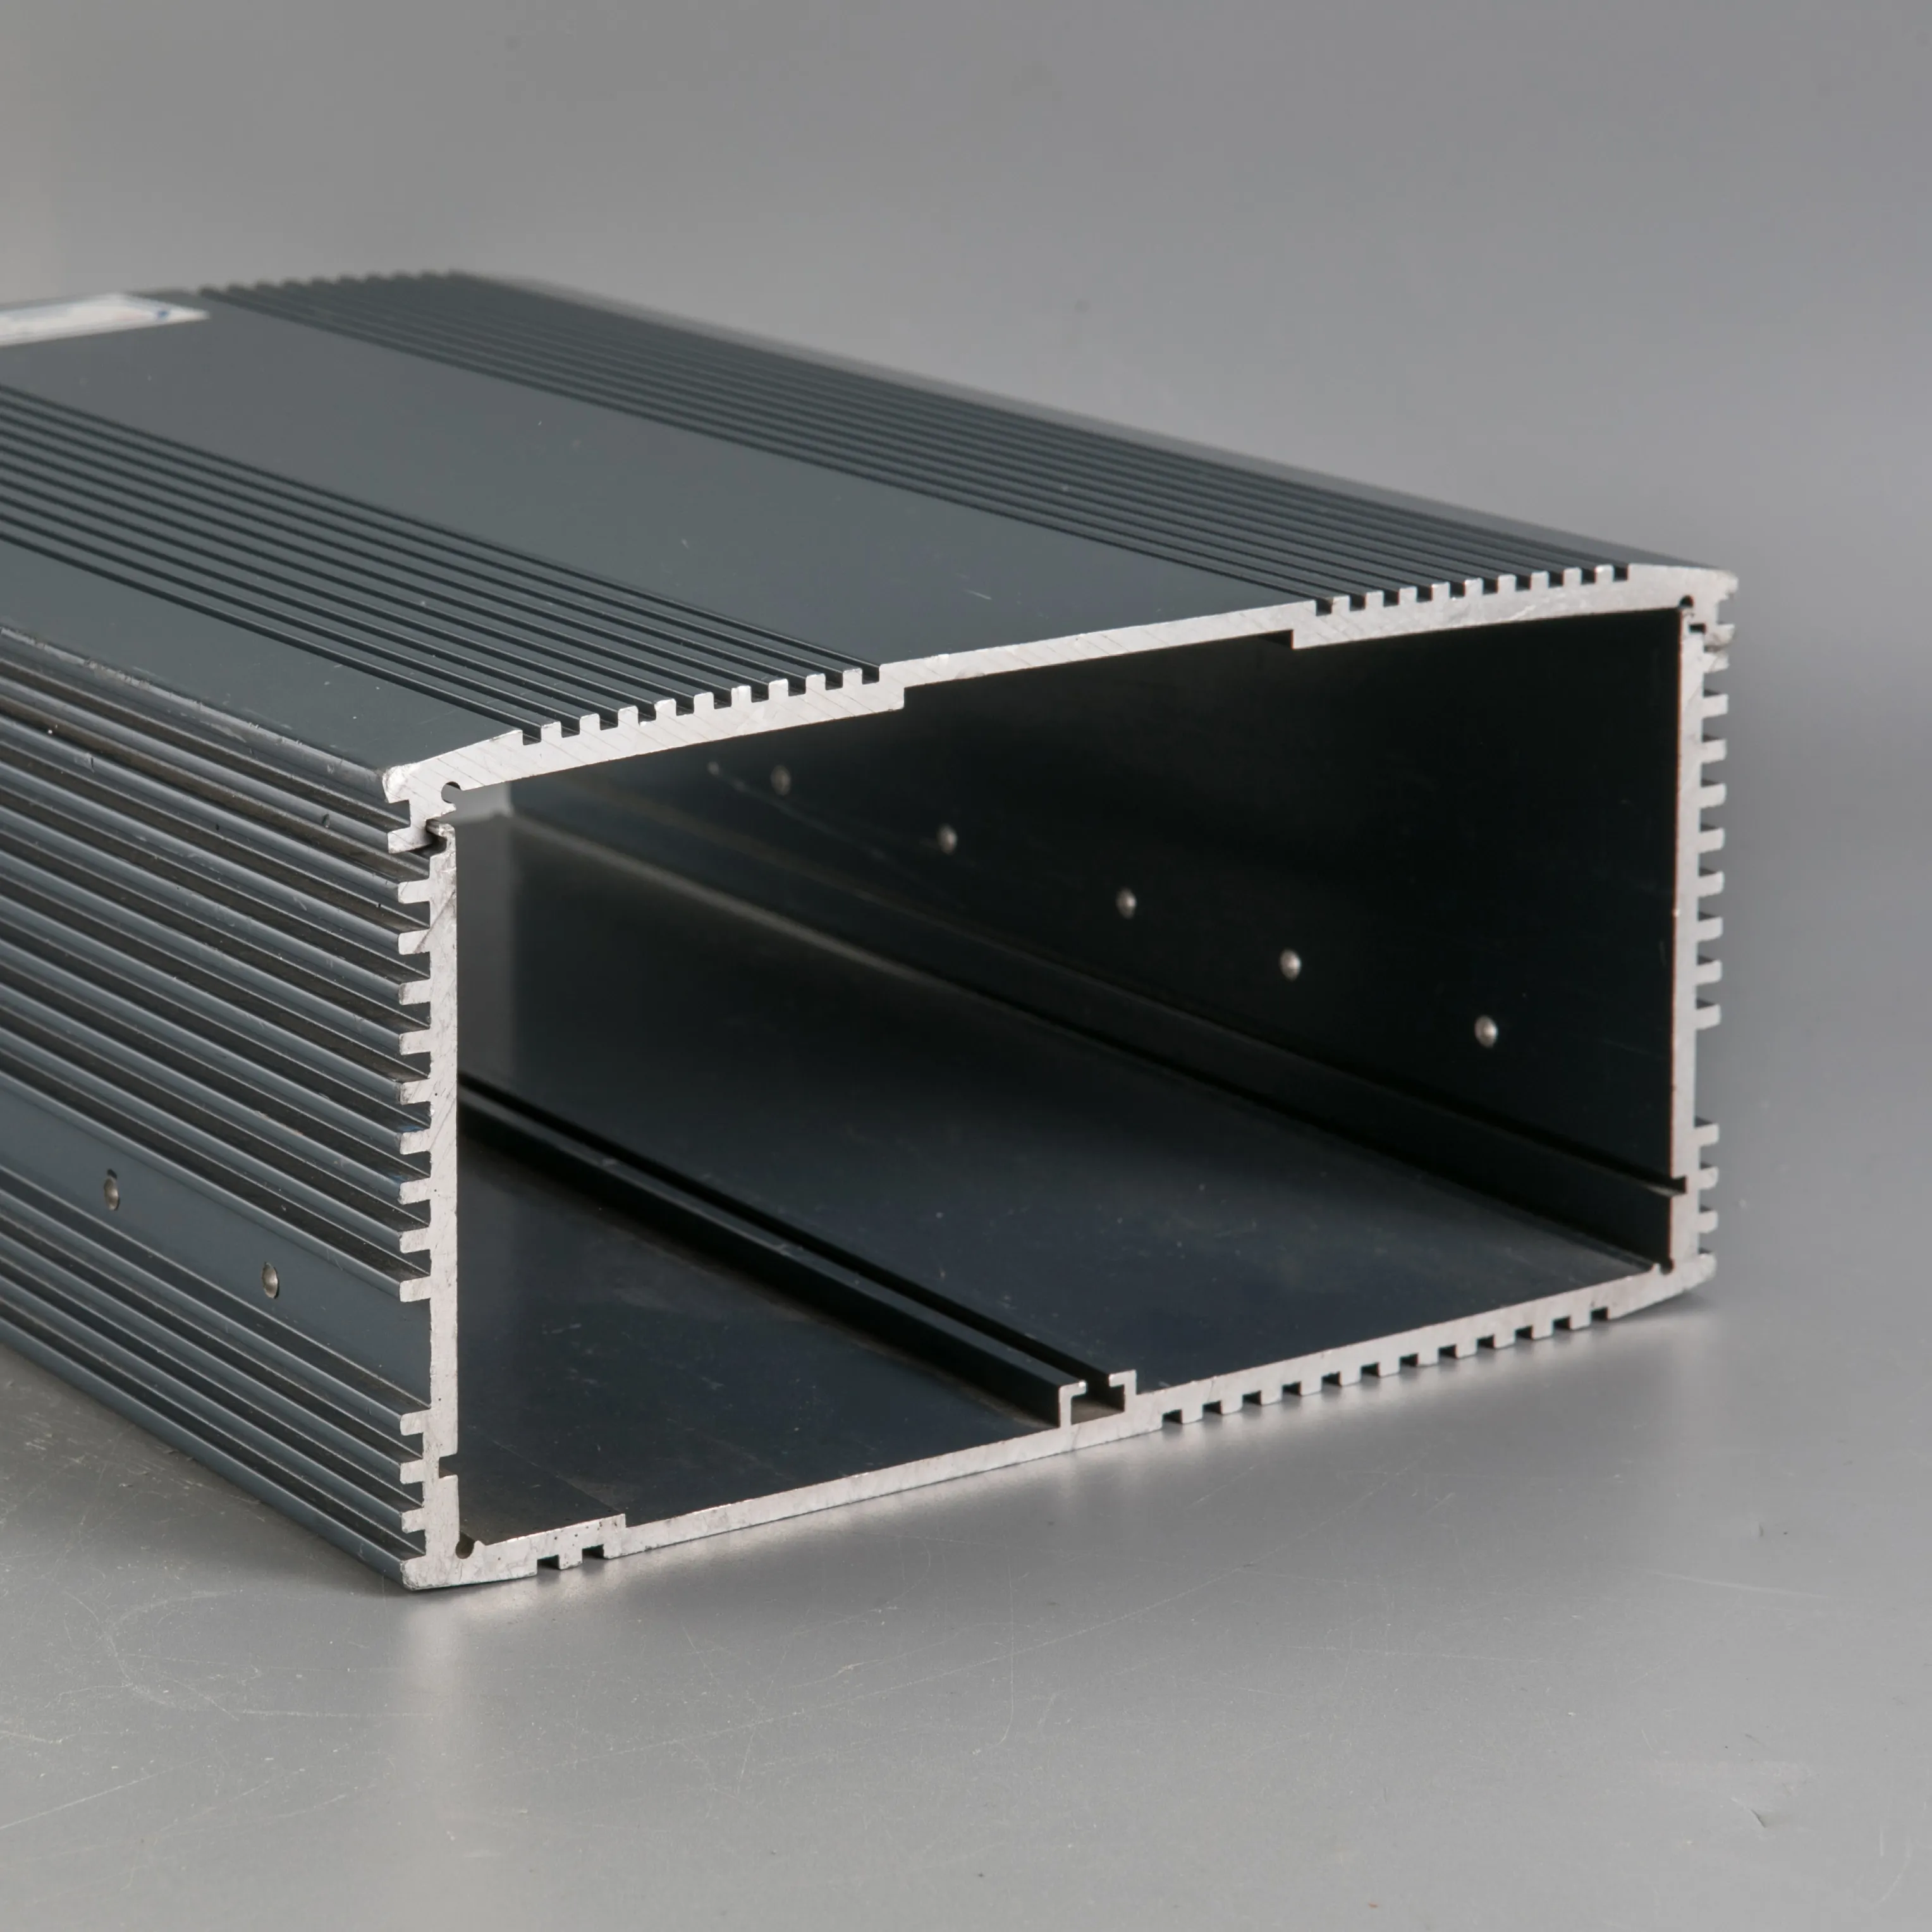 Sukey aluminium manufacturer of 6063-T5 aluminium hollow profiles with powder coating for aluminum extrusion box